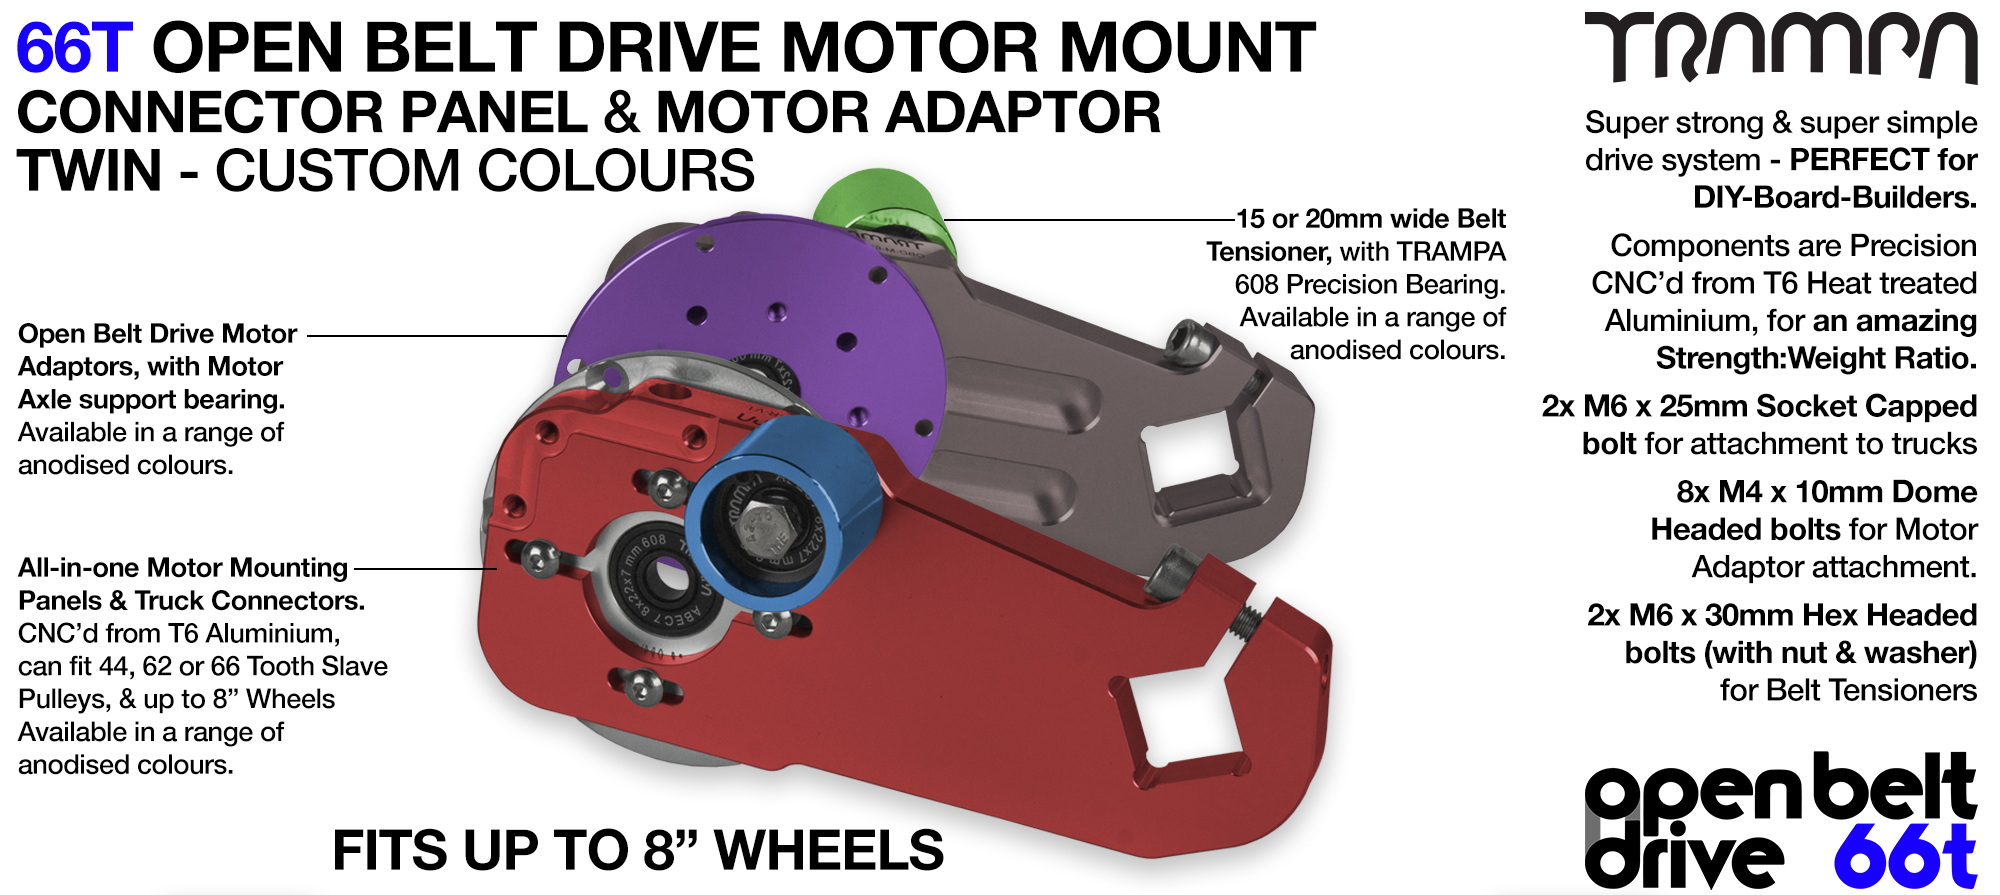 66T OPEN BELT DRIVE Motor Mount & Motor Adaptor - TWIN 